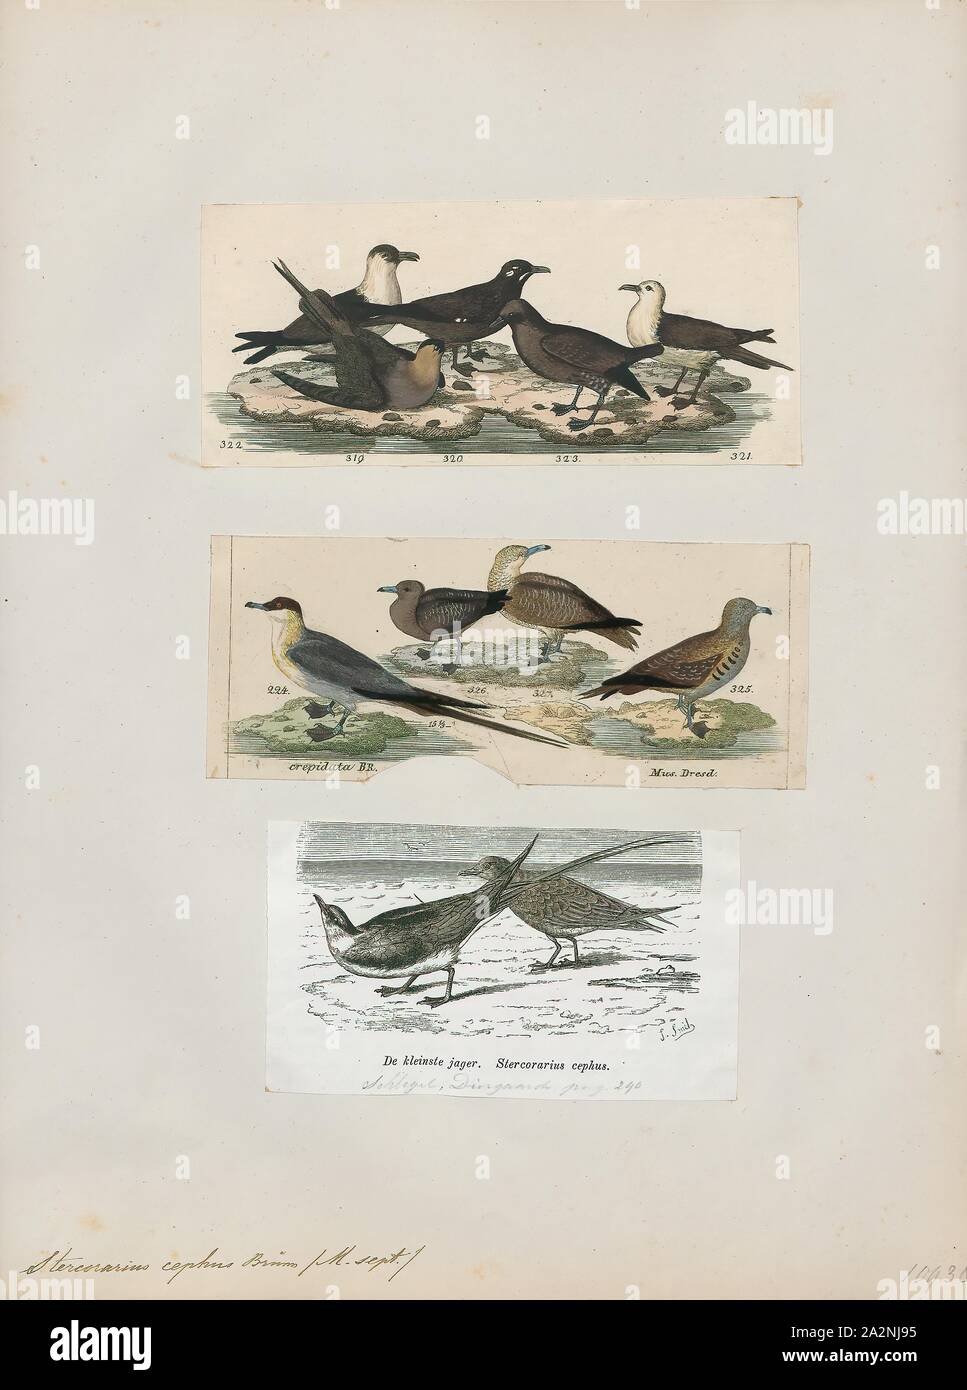 Eulen cephus, Ausdrucken, die raubmöwen sind eine Gruppe von räuberischen Seevögel mit etwa sieben Arten der Gattung Eulen, die einzige Gattung in der Familie Stercorariidae. Die drei kleineren Skuas sind jaegers im amerikanischen Englisch genannt., 1700-1880 Stockfoto